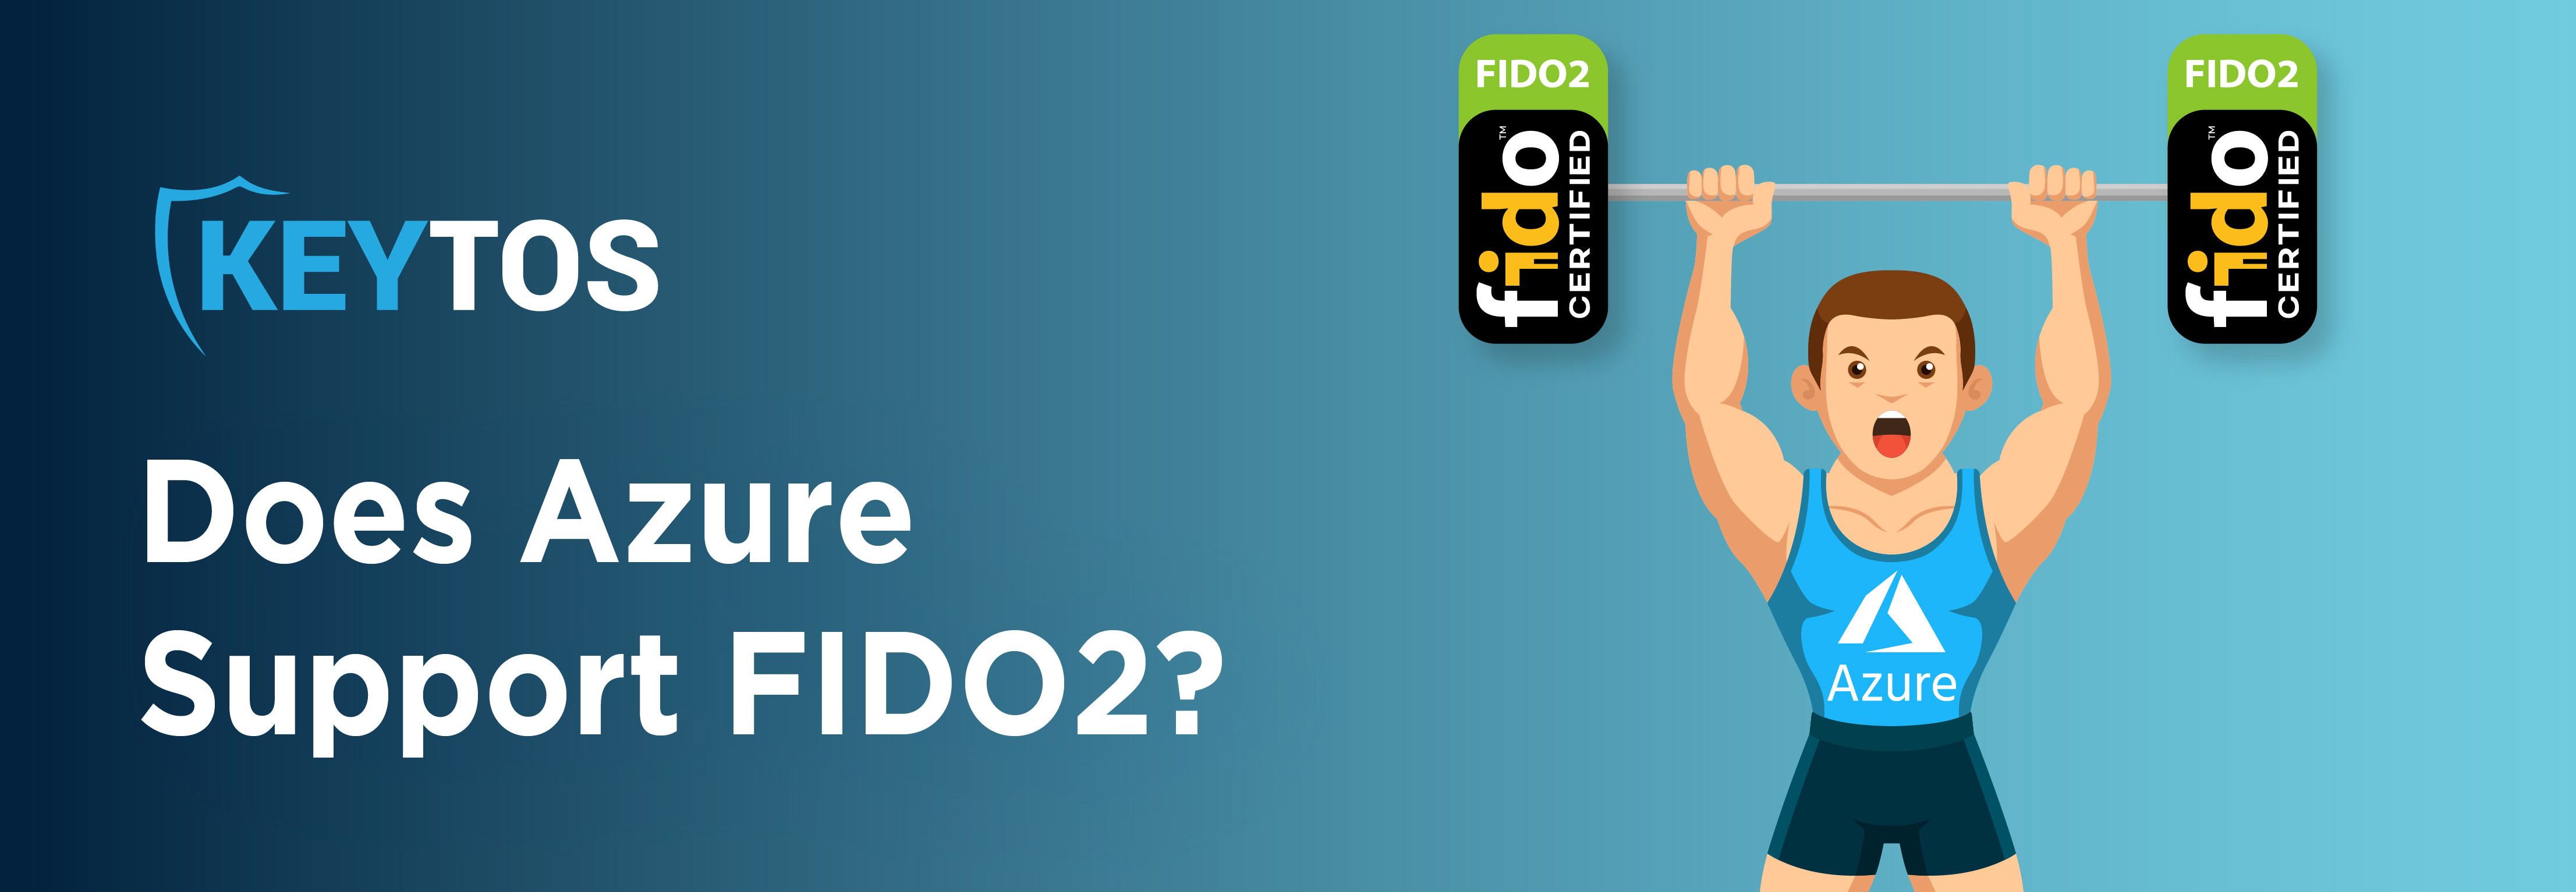 ¿Azure es compatible con FIDO2?